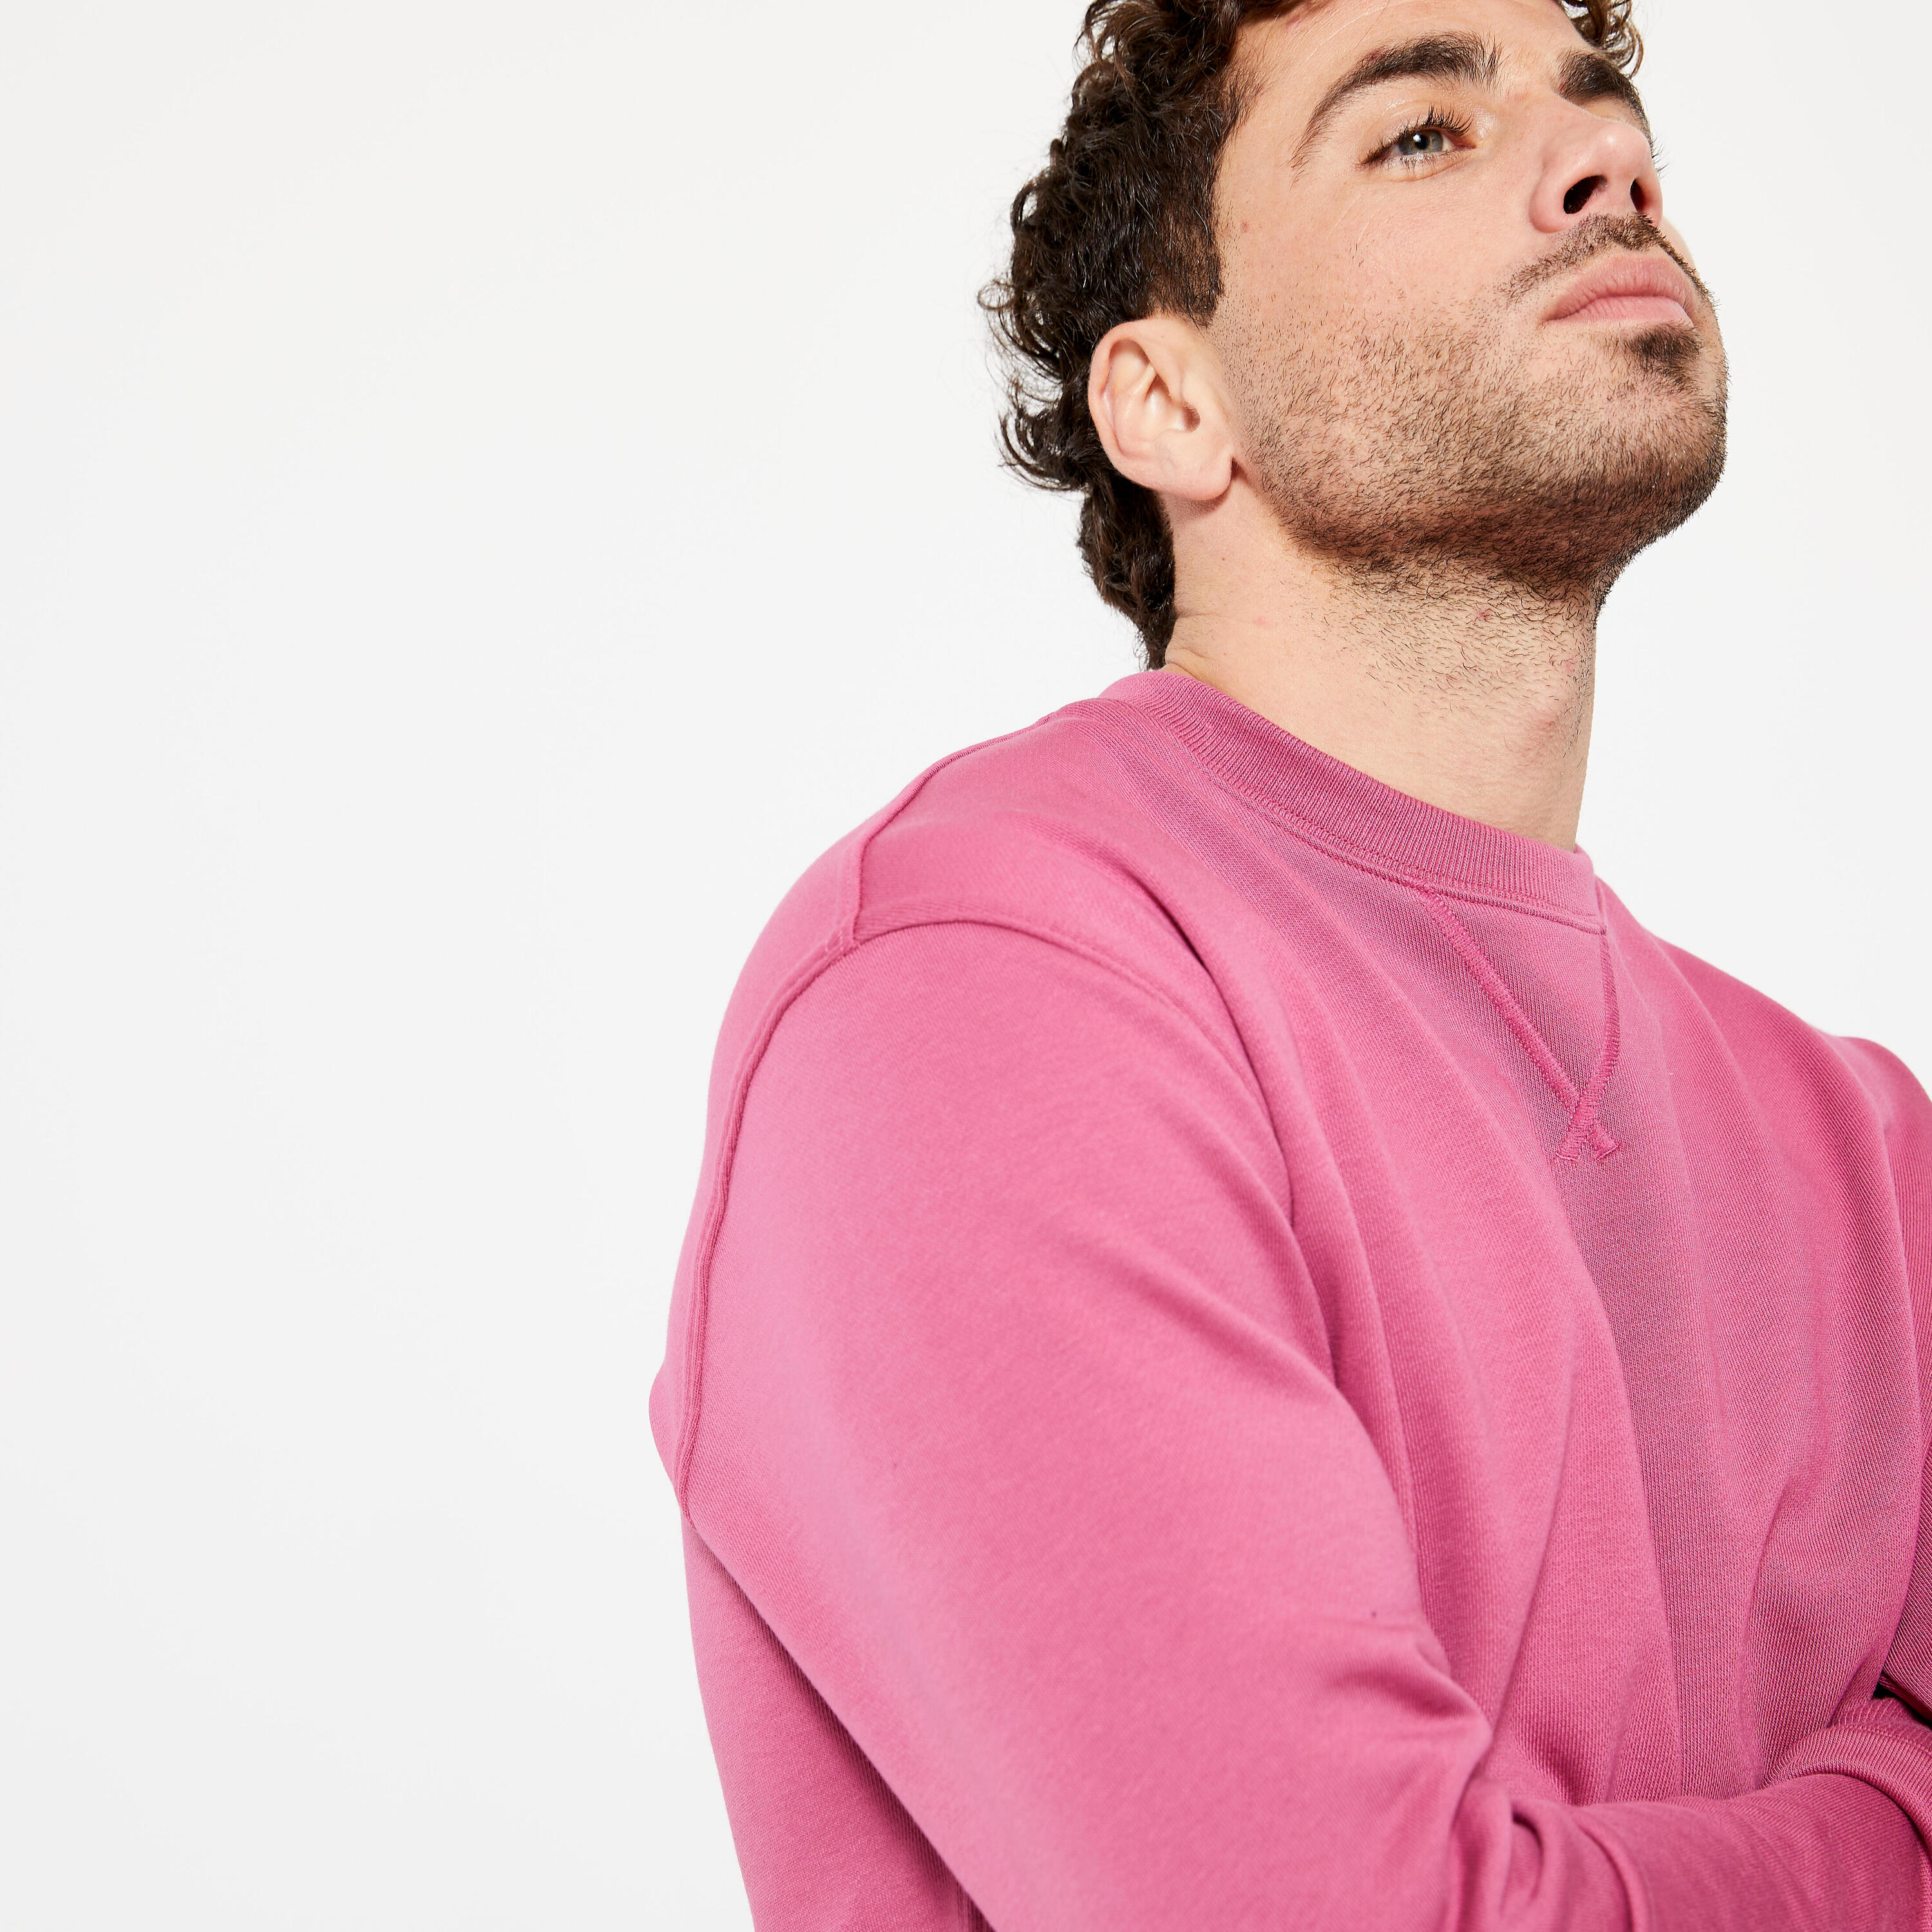 Men's Crew Neck Fitness Sweatshirt 500 Essentials - Hibiscus Pink 4/6